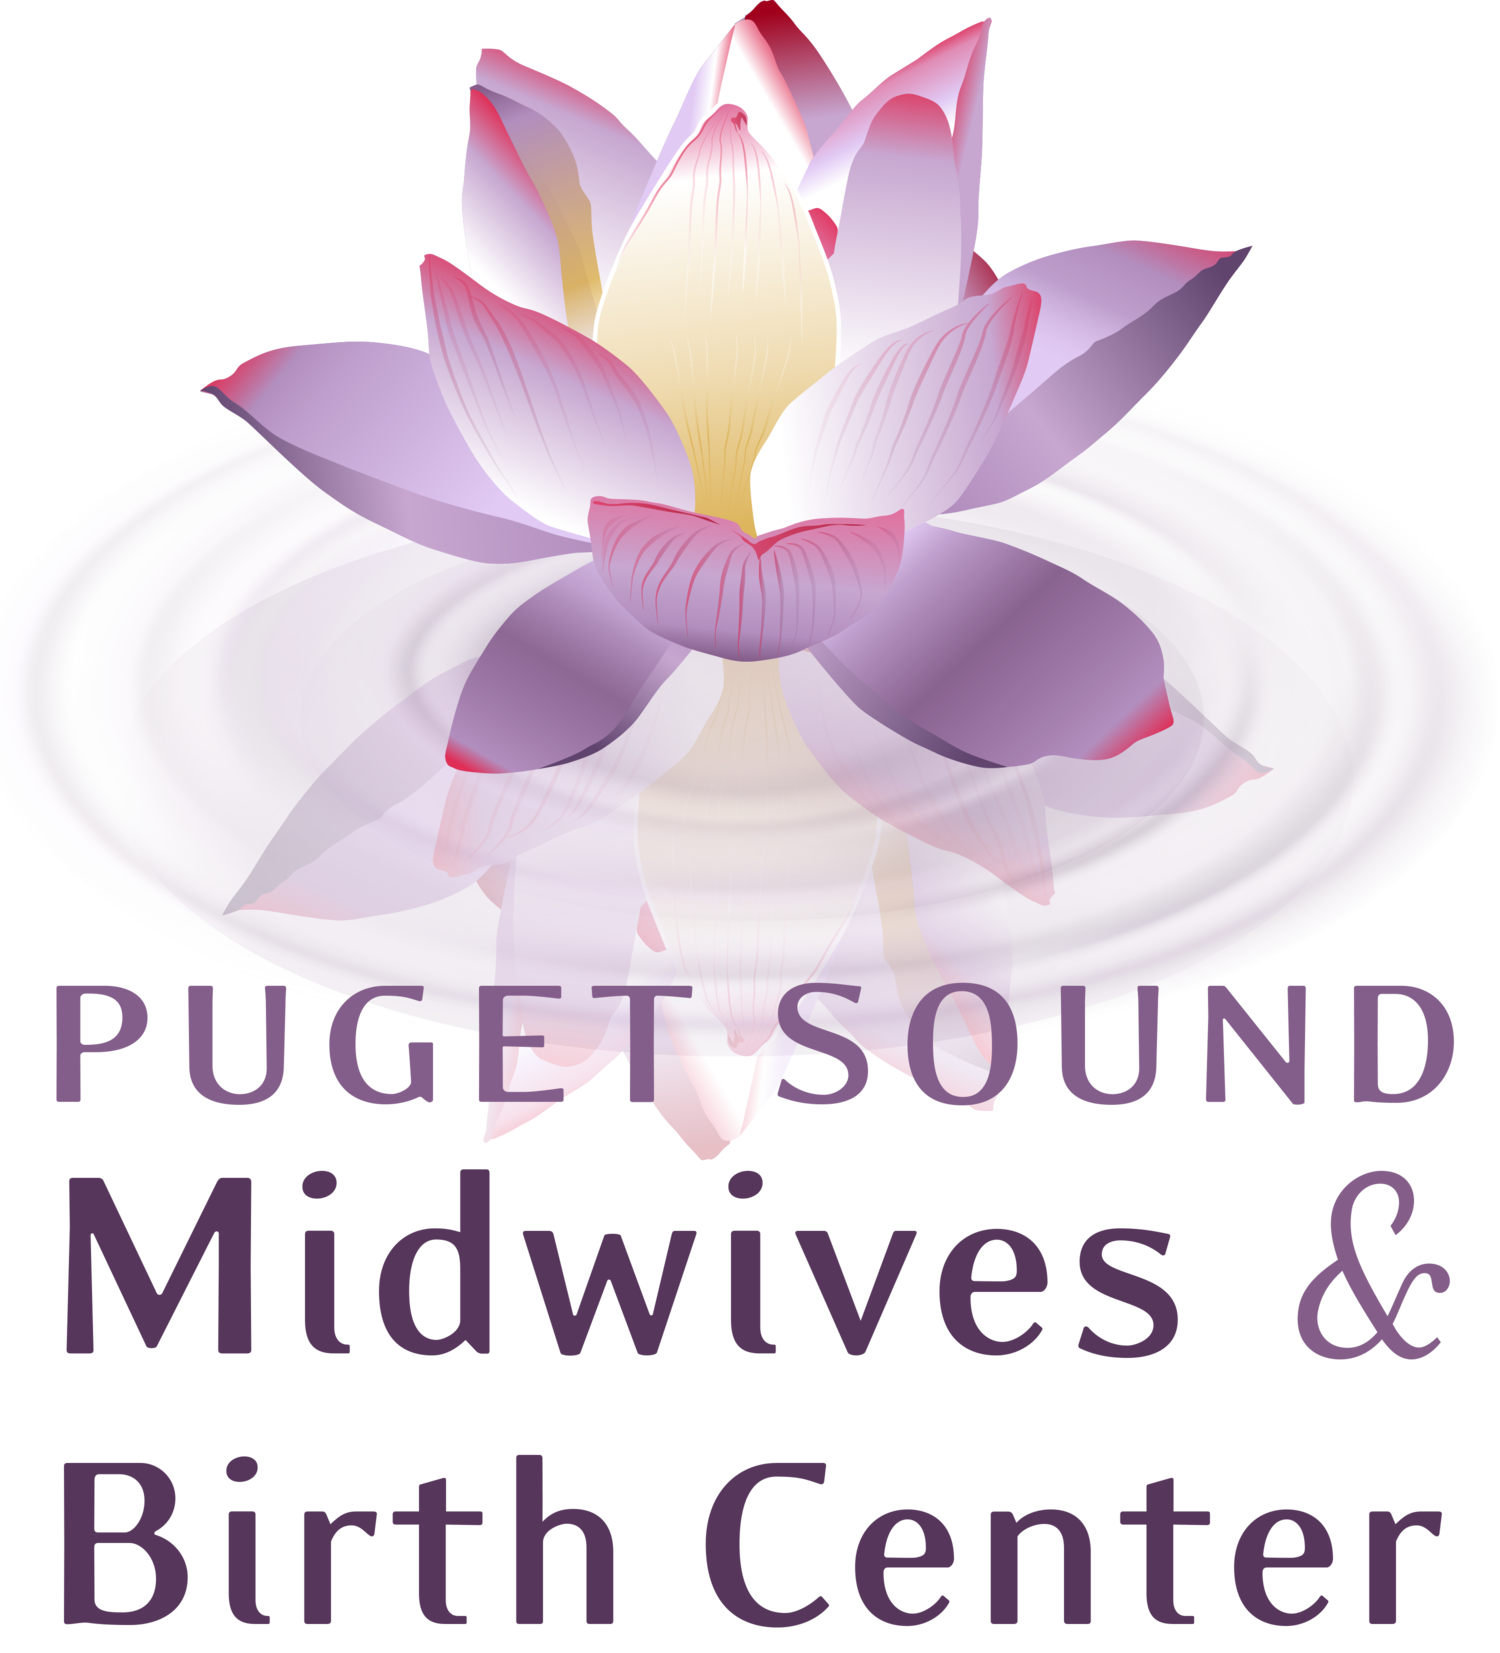 Puget Sound Birth Center